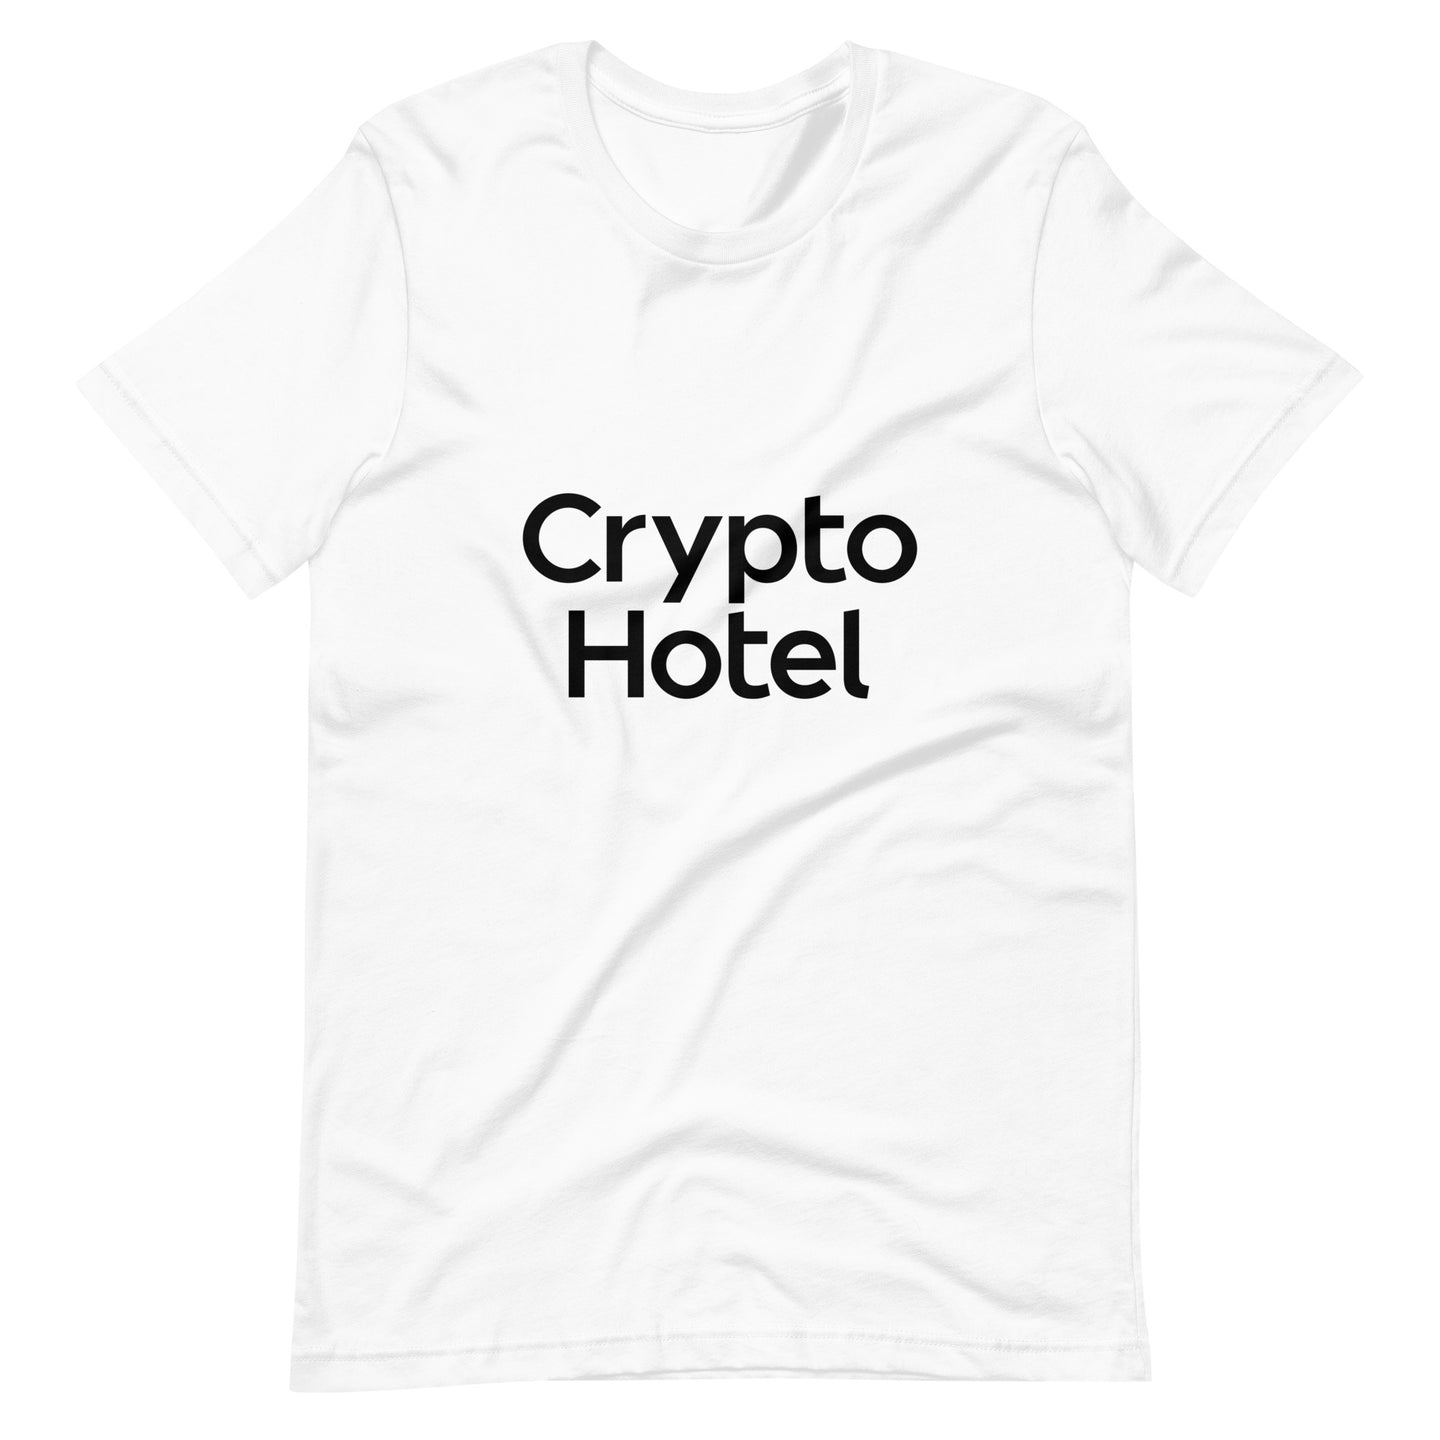 Crypto Hotel Unisex t-shirt